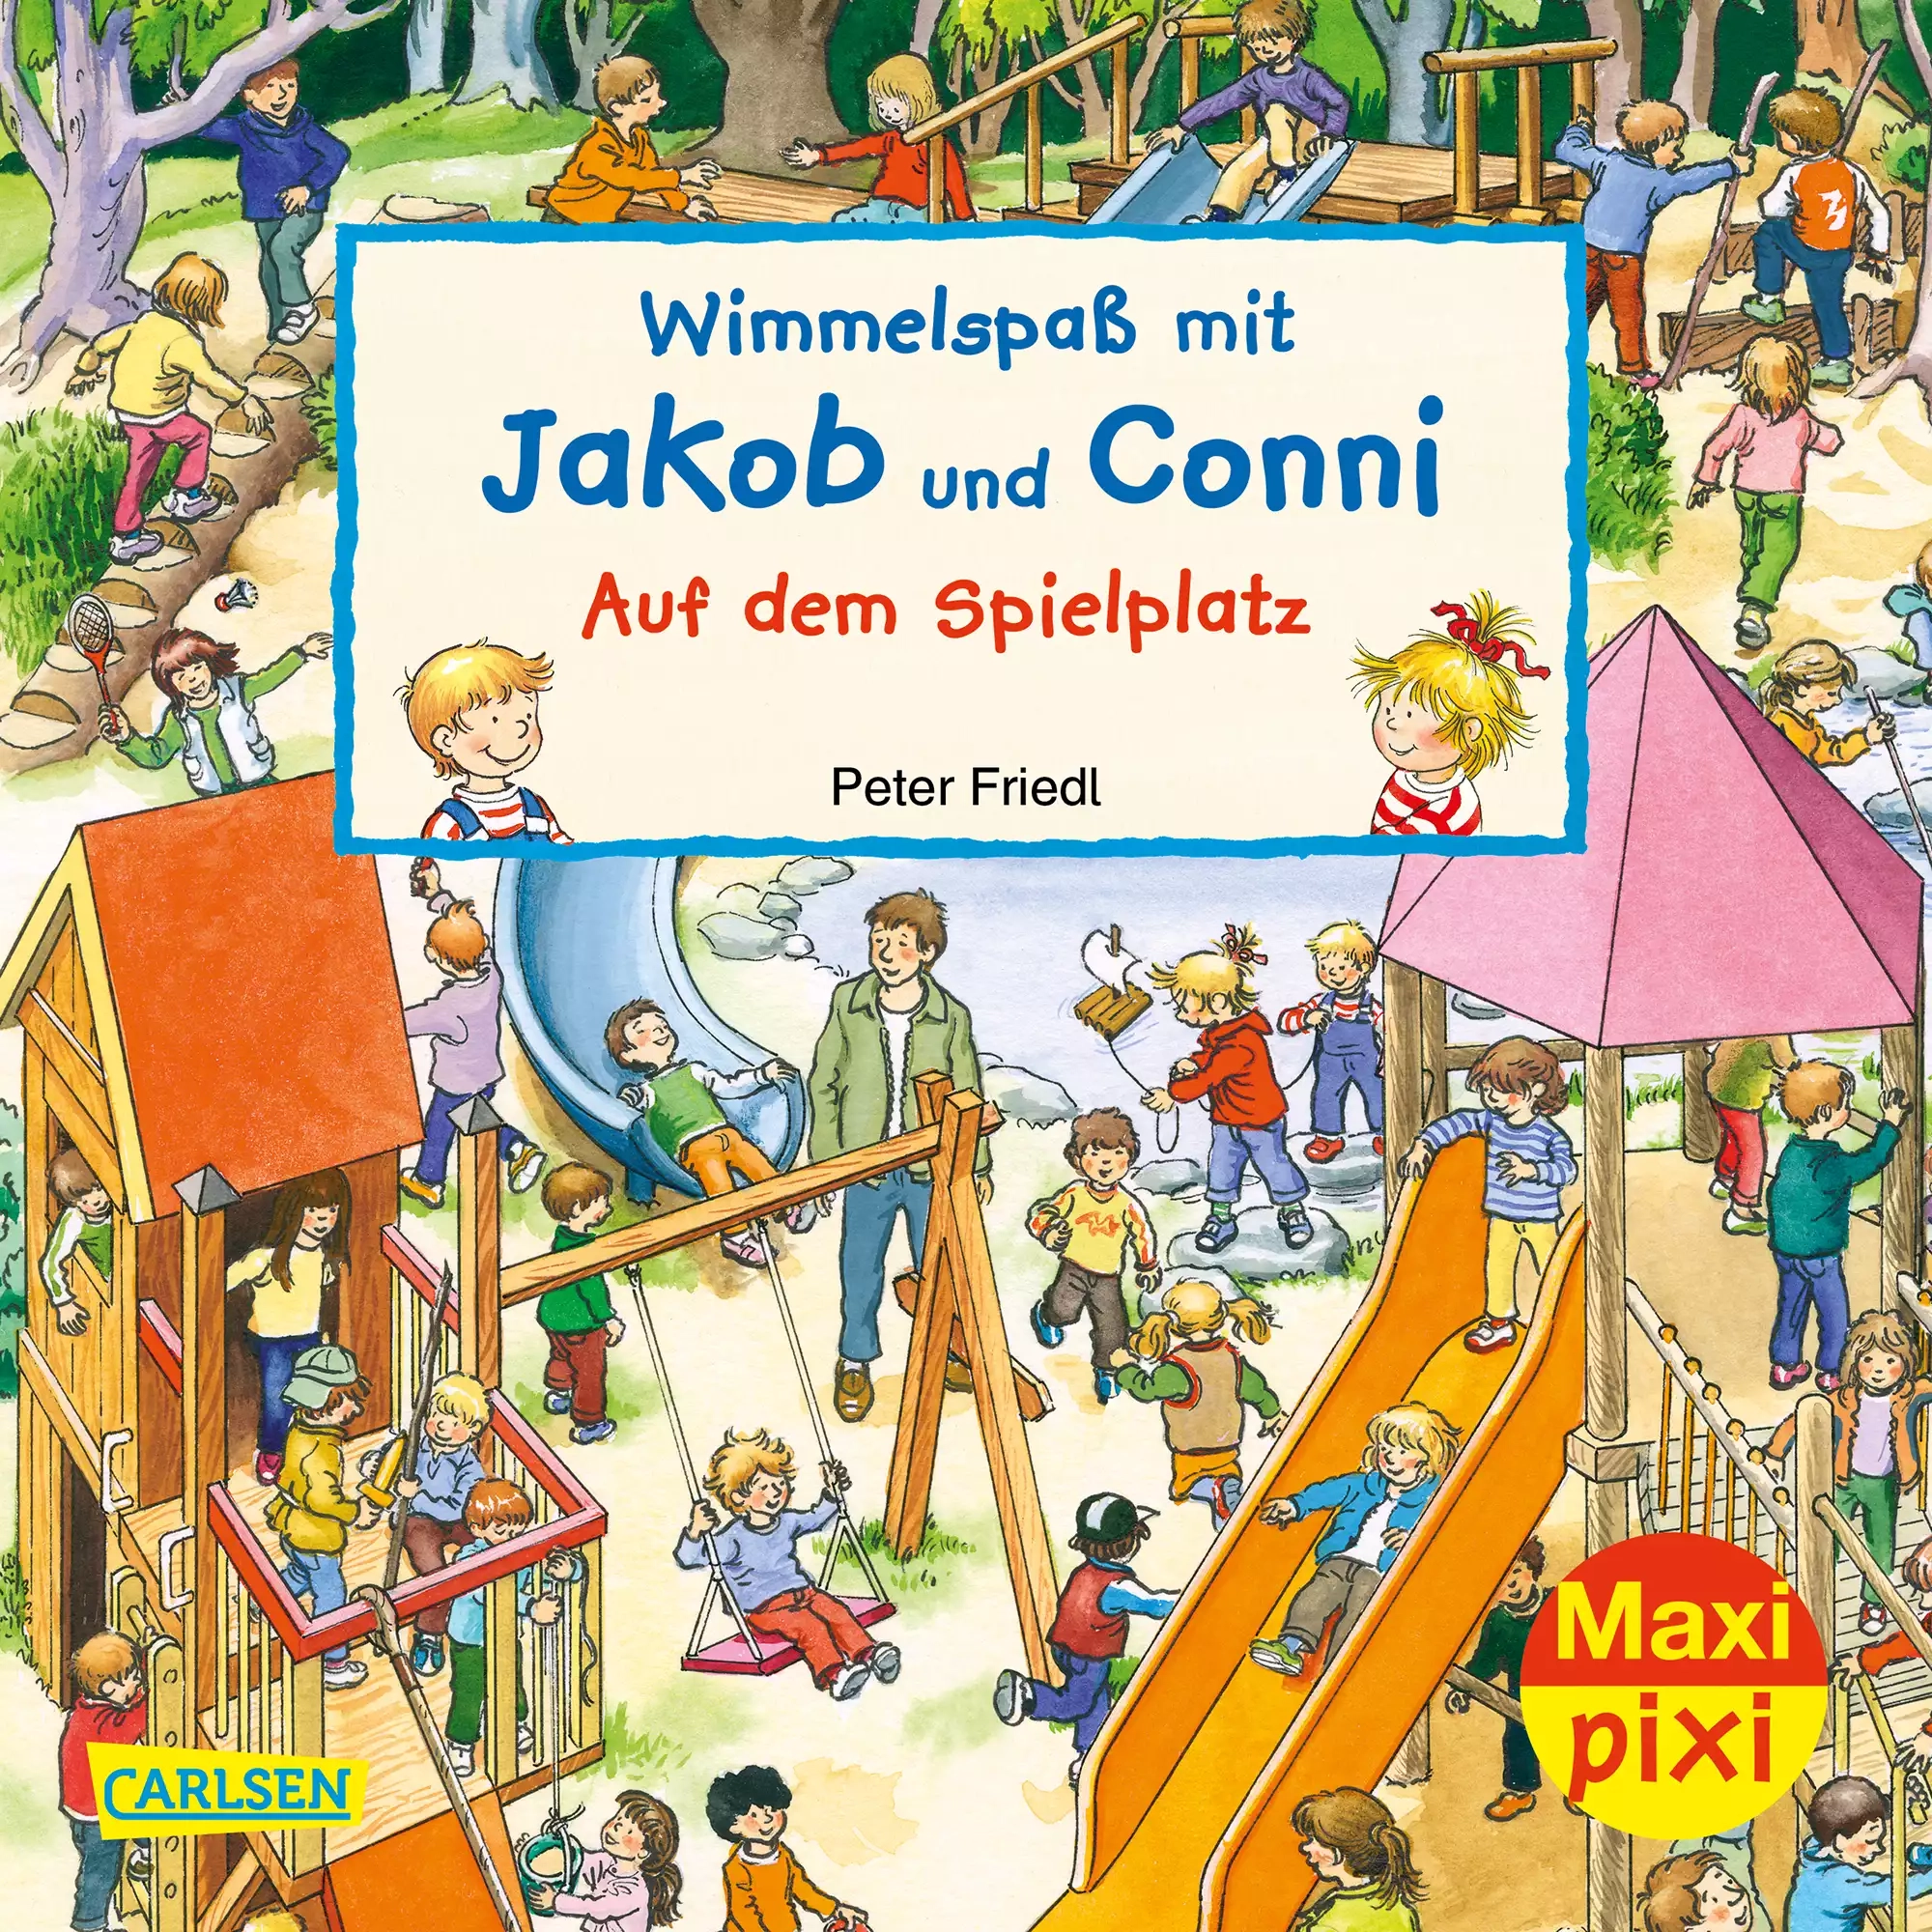 Maxi Pixi 320 Wimmelspaß mit Jakob und Conni auf dem Spielplatz CARLSEN 2000579080913 1